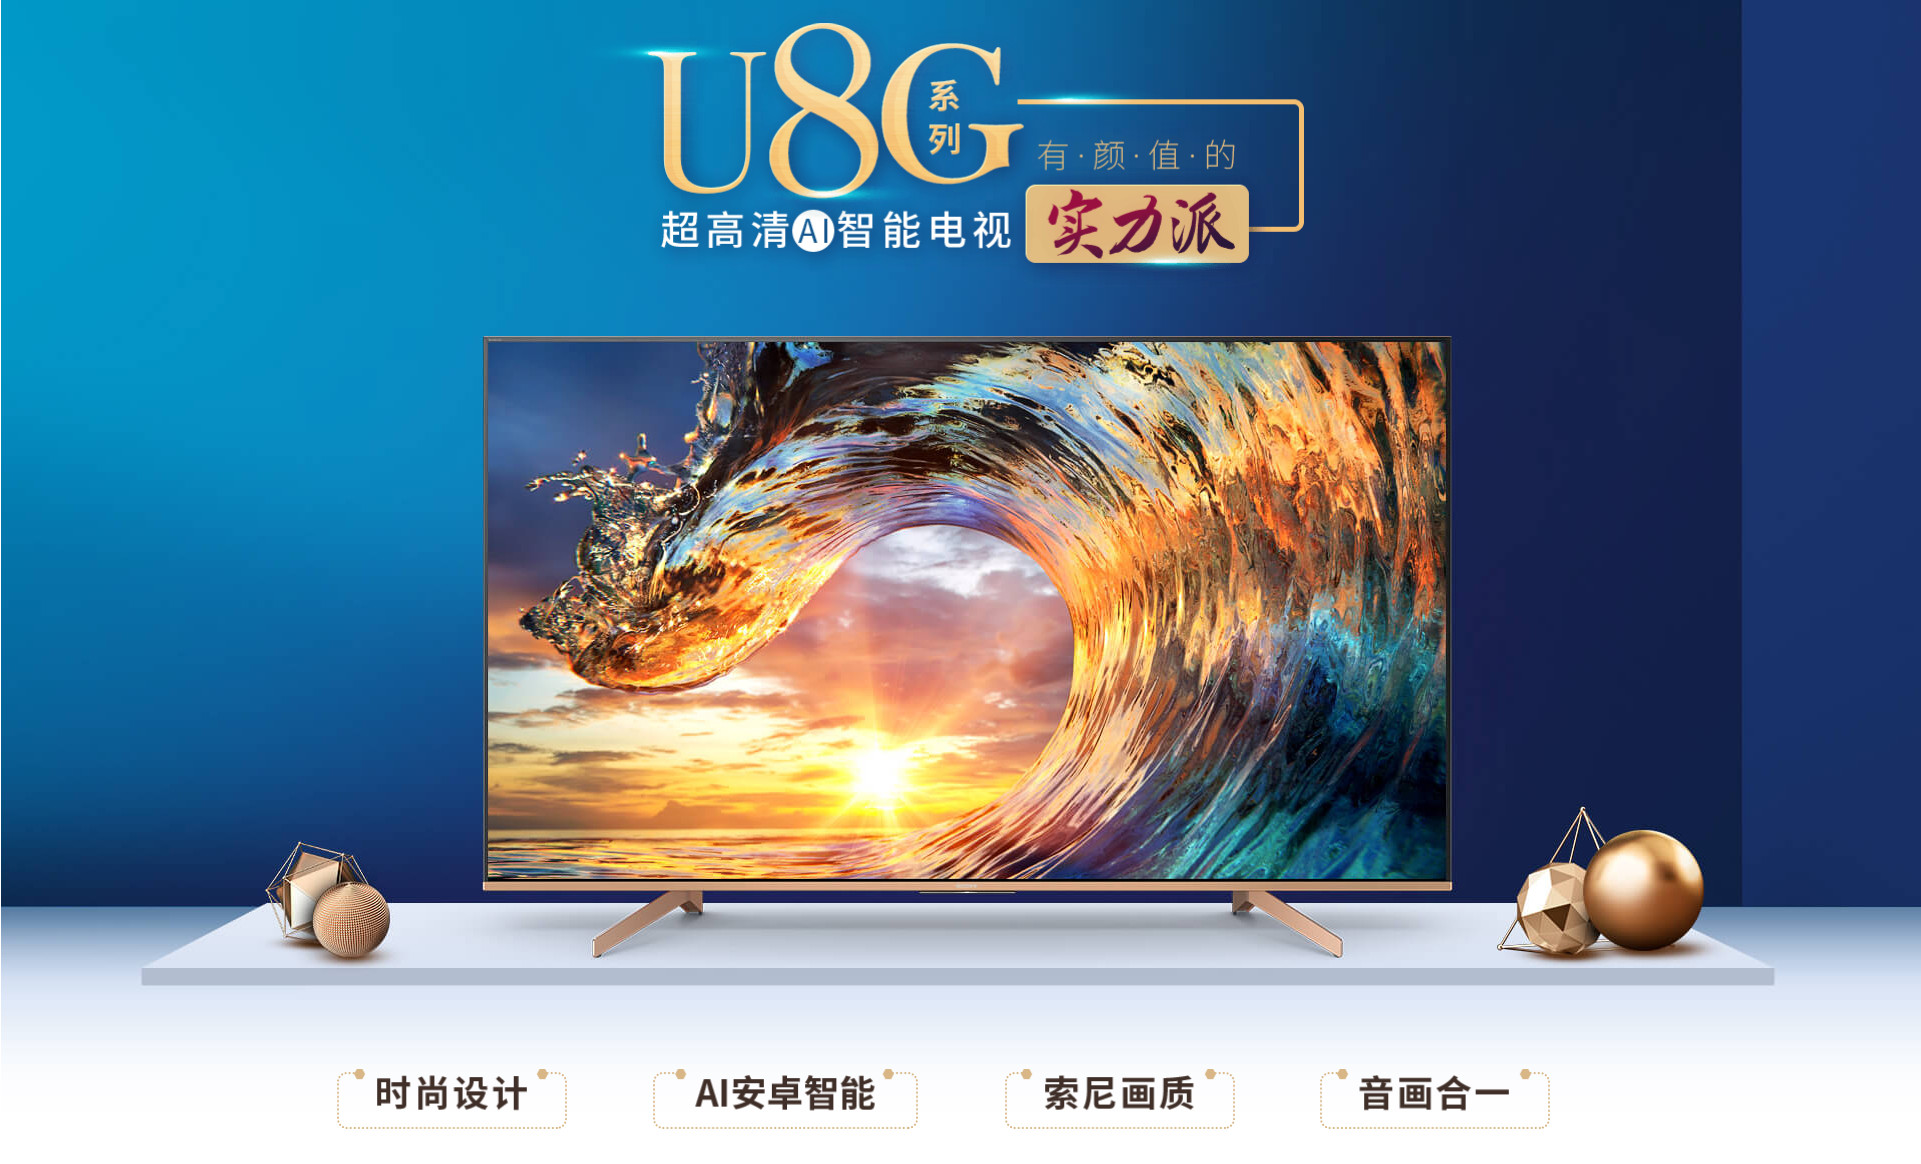 索僧支布4K HDR电视新品U8G系列 卖价6699元起